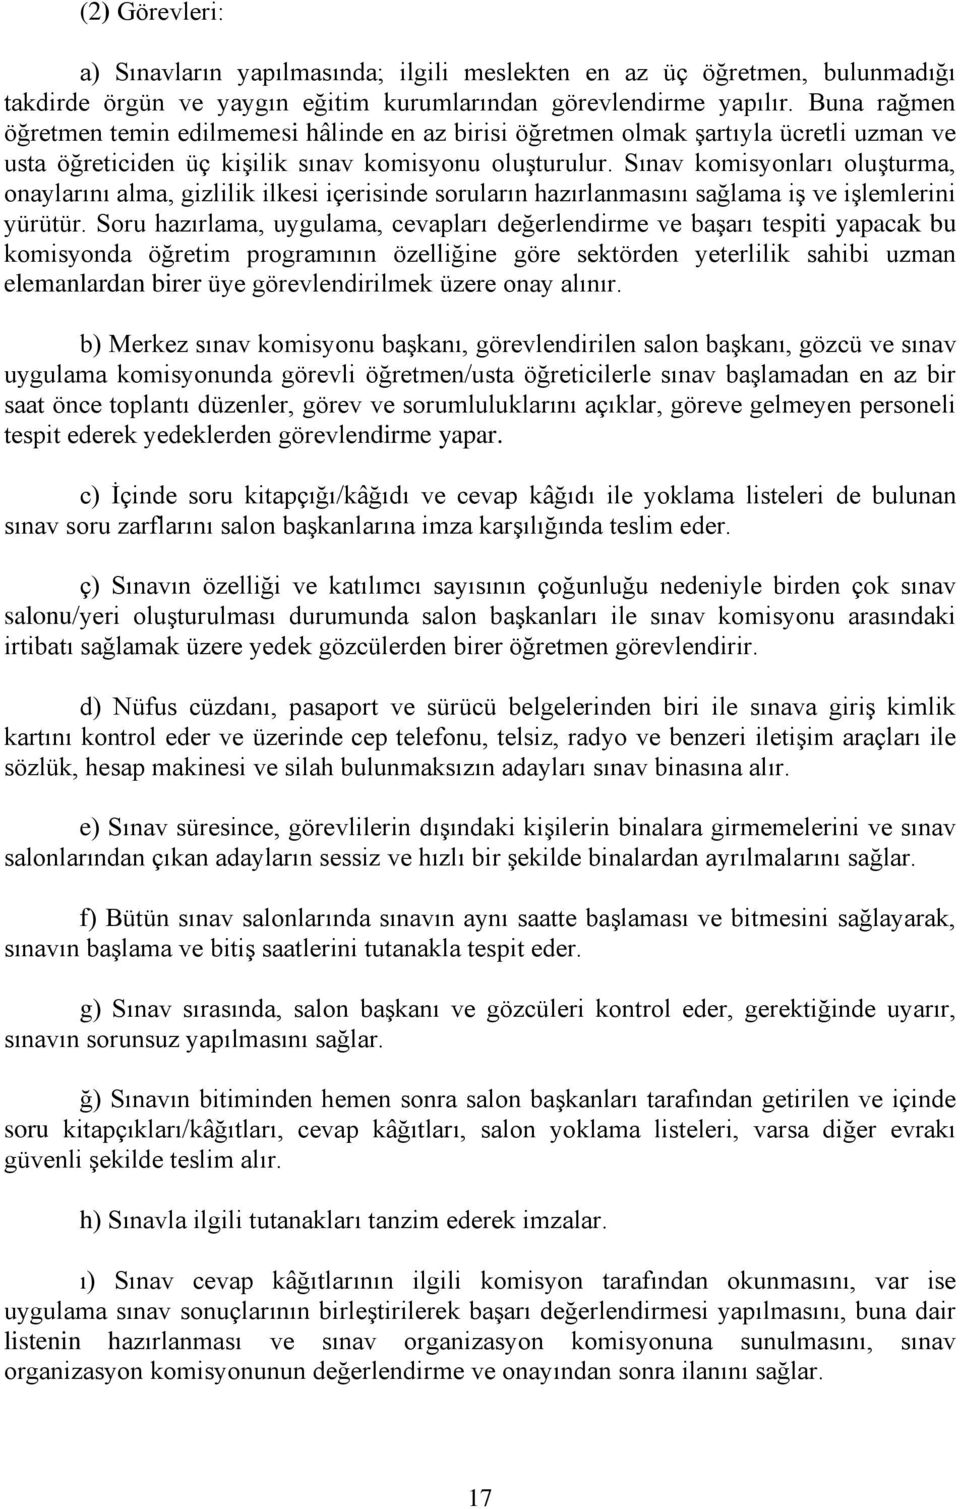 Sınav komisyonları oluģturma, onaylarını alma, gizlilik ilkesi içerisinde soruların hazırlanmasını sağlama iģ ve iģlemlerini yürütür.